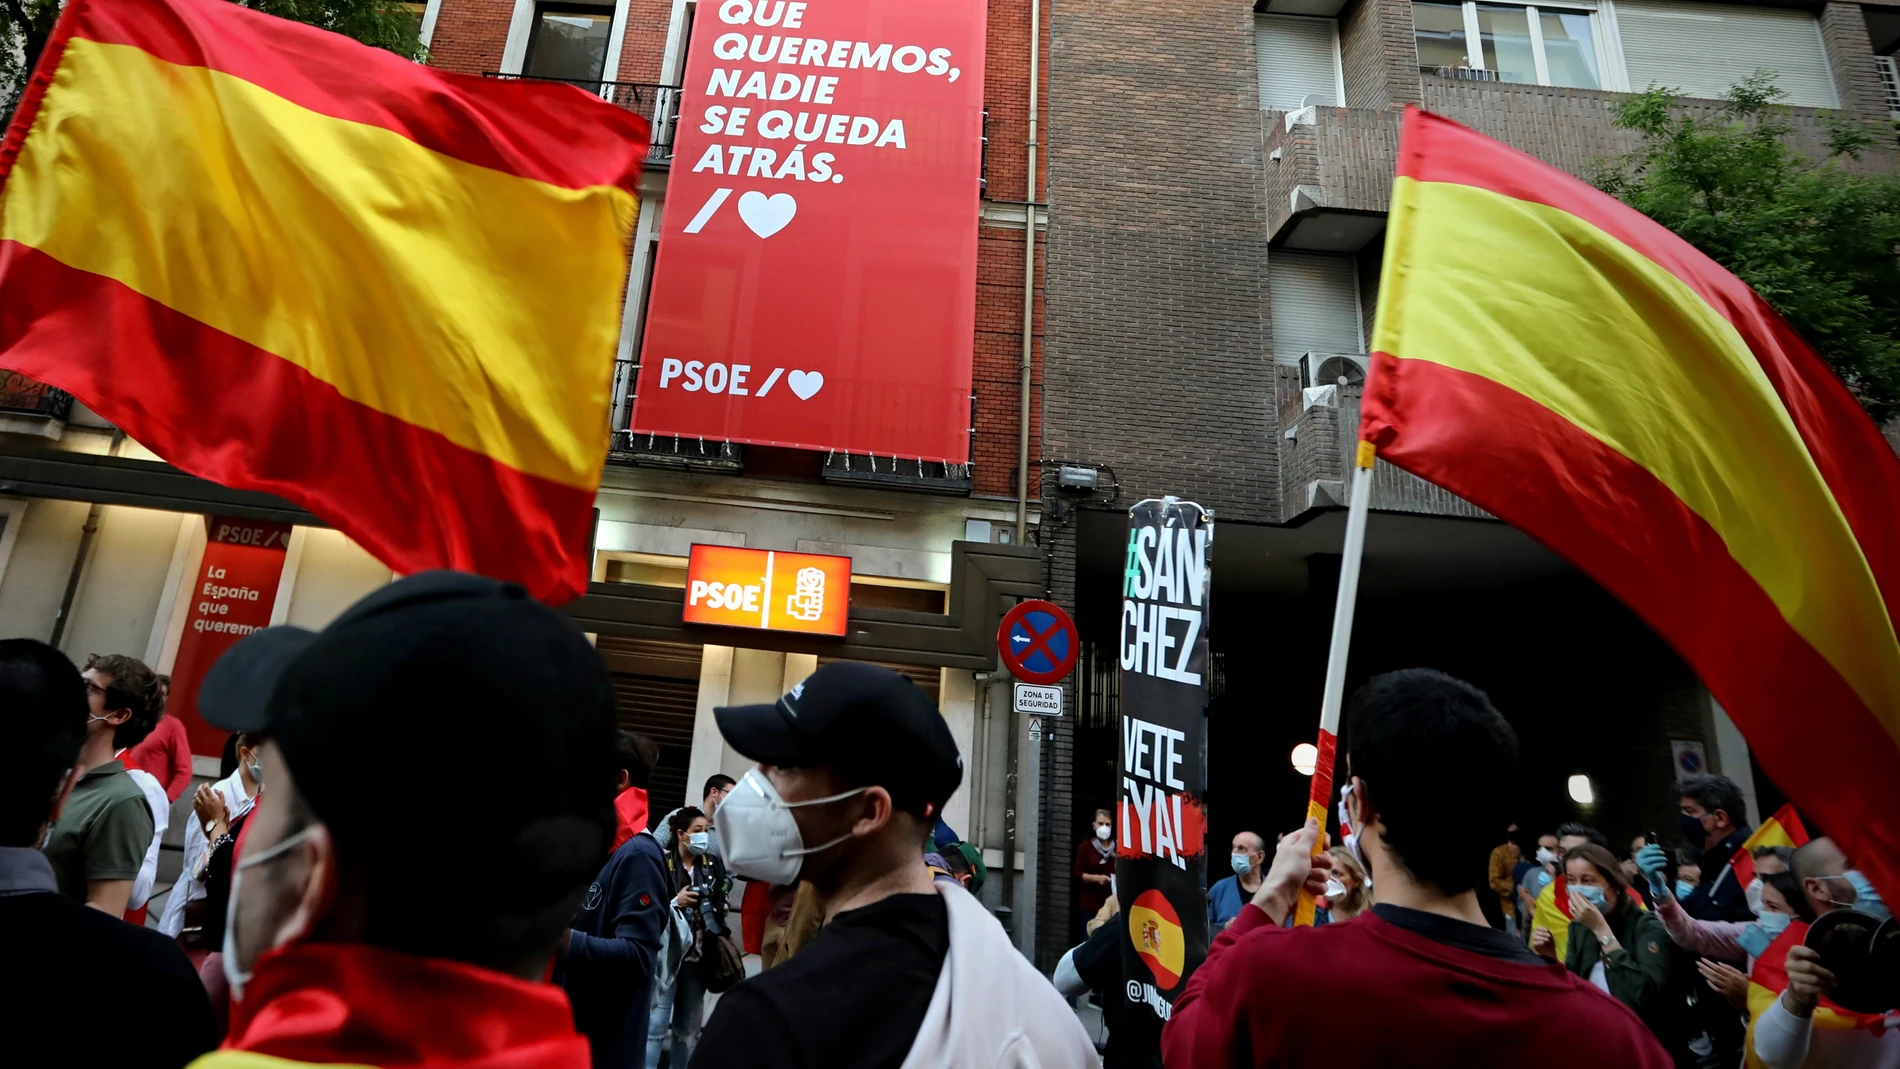 Protestas en la sede del PSOE en la calle Ferraz contra la prolongación del estado de alarma y la gestión del gobierno ante el coronavirus